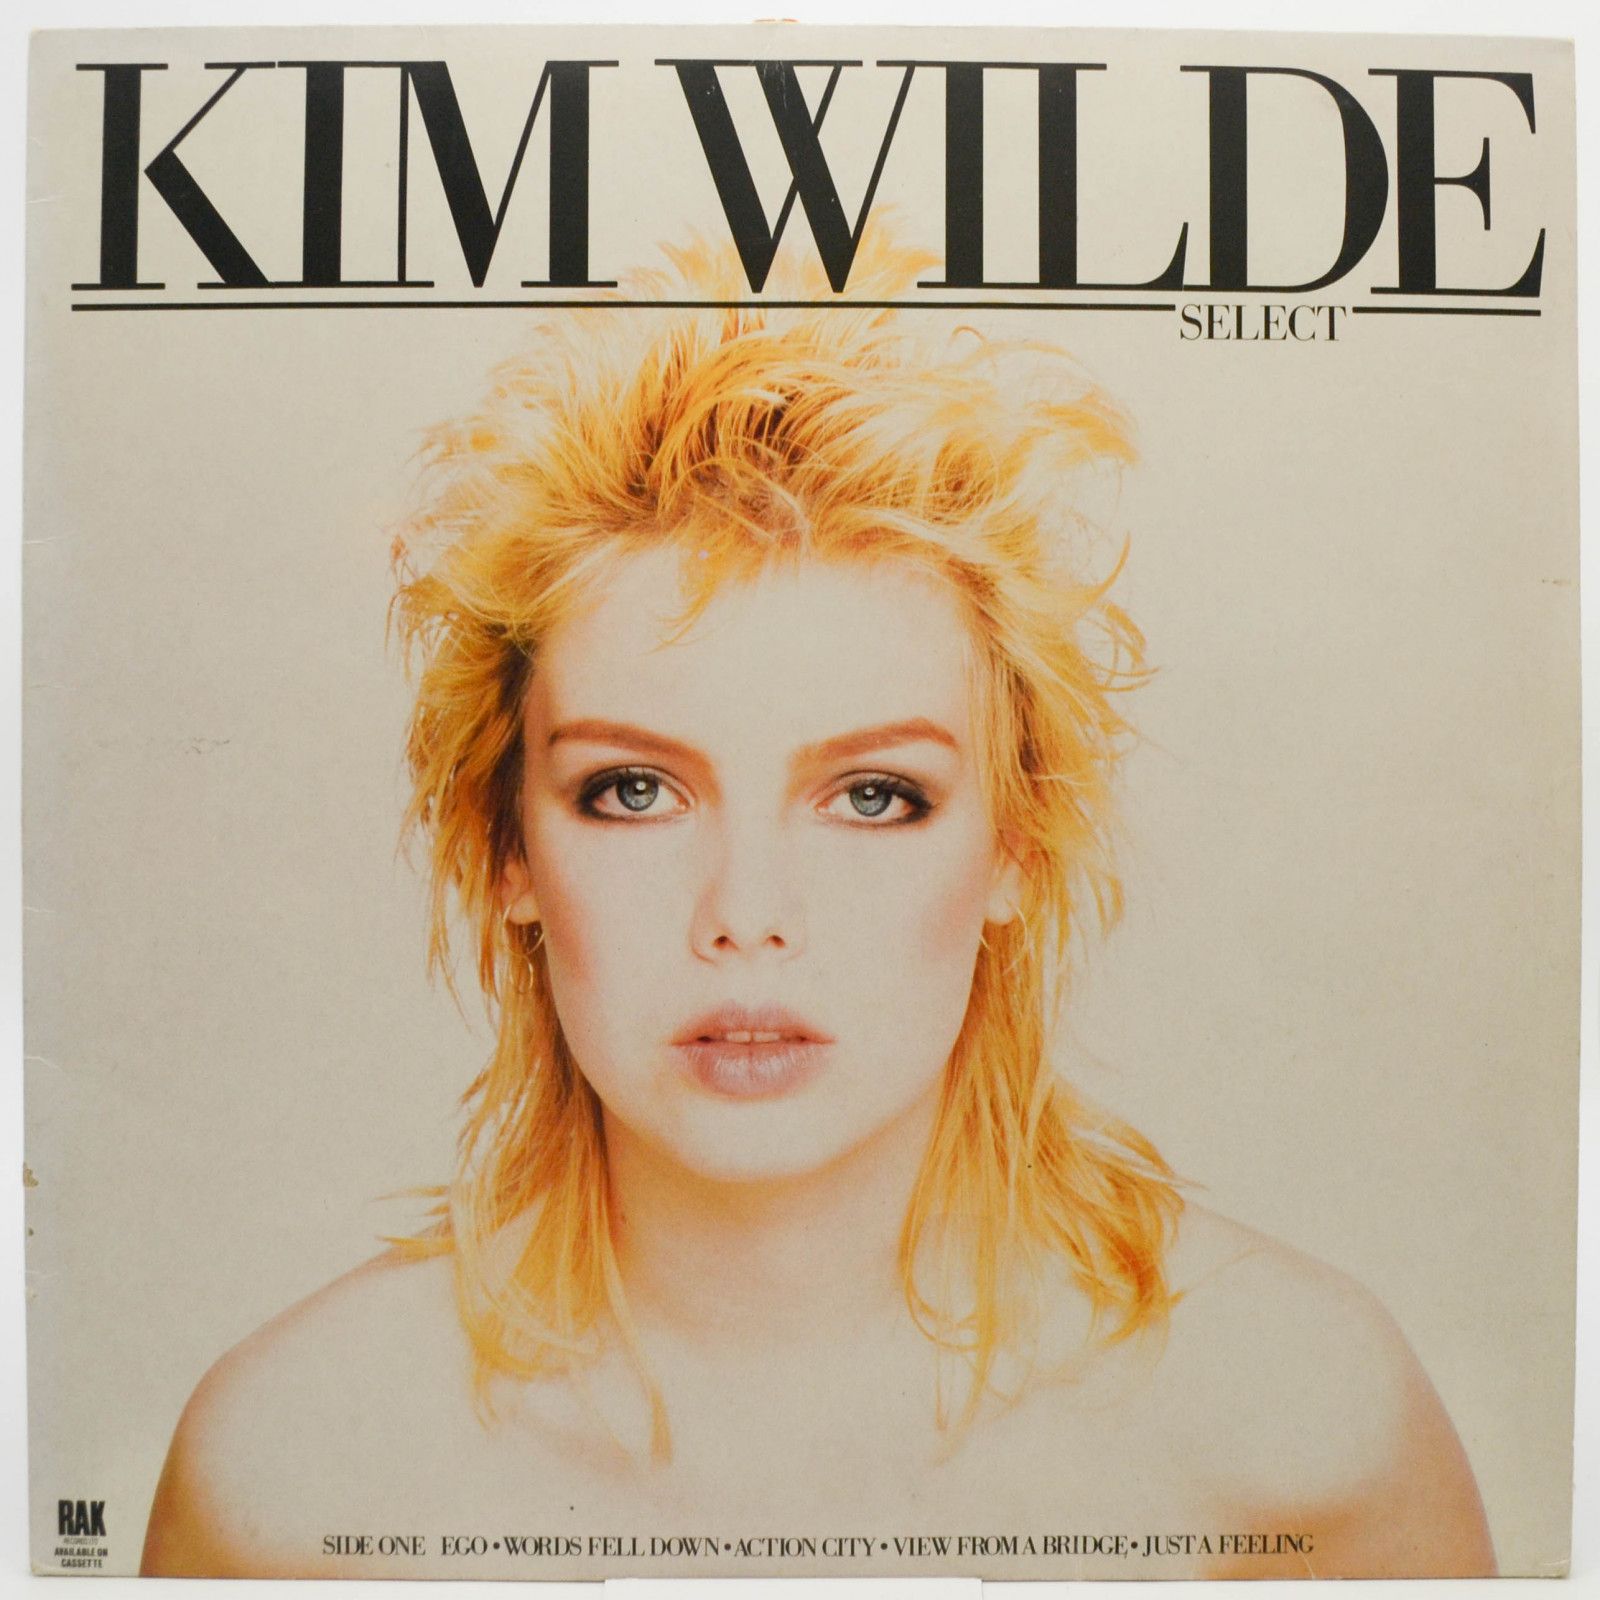 Kim Wilde — Select, 1982